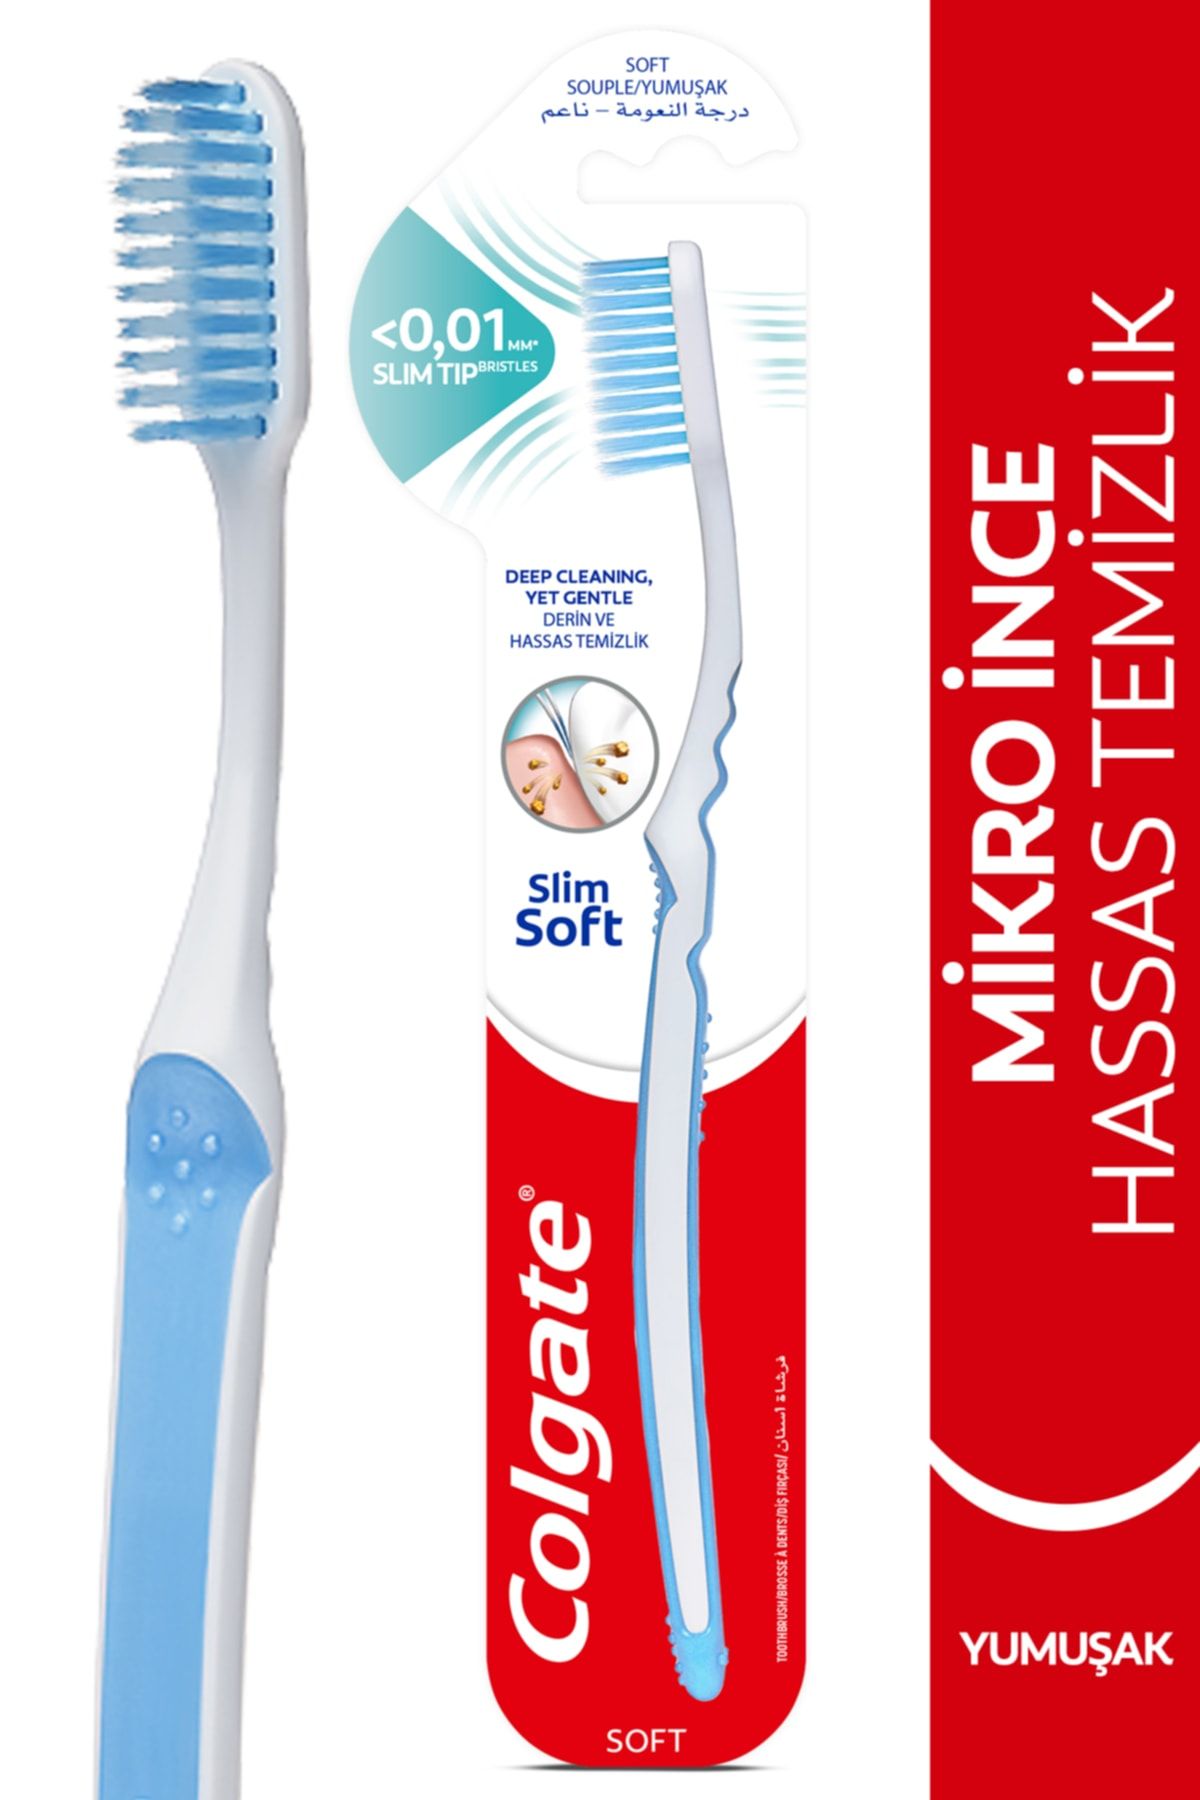 Mikro İnce Derin ve Hassas Temizlik Yumuşak Diş Fırçası_0